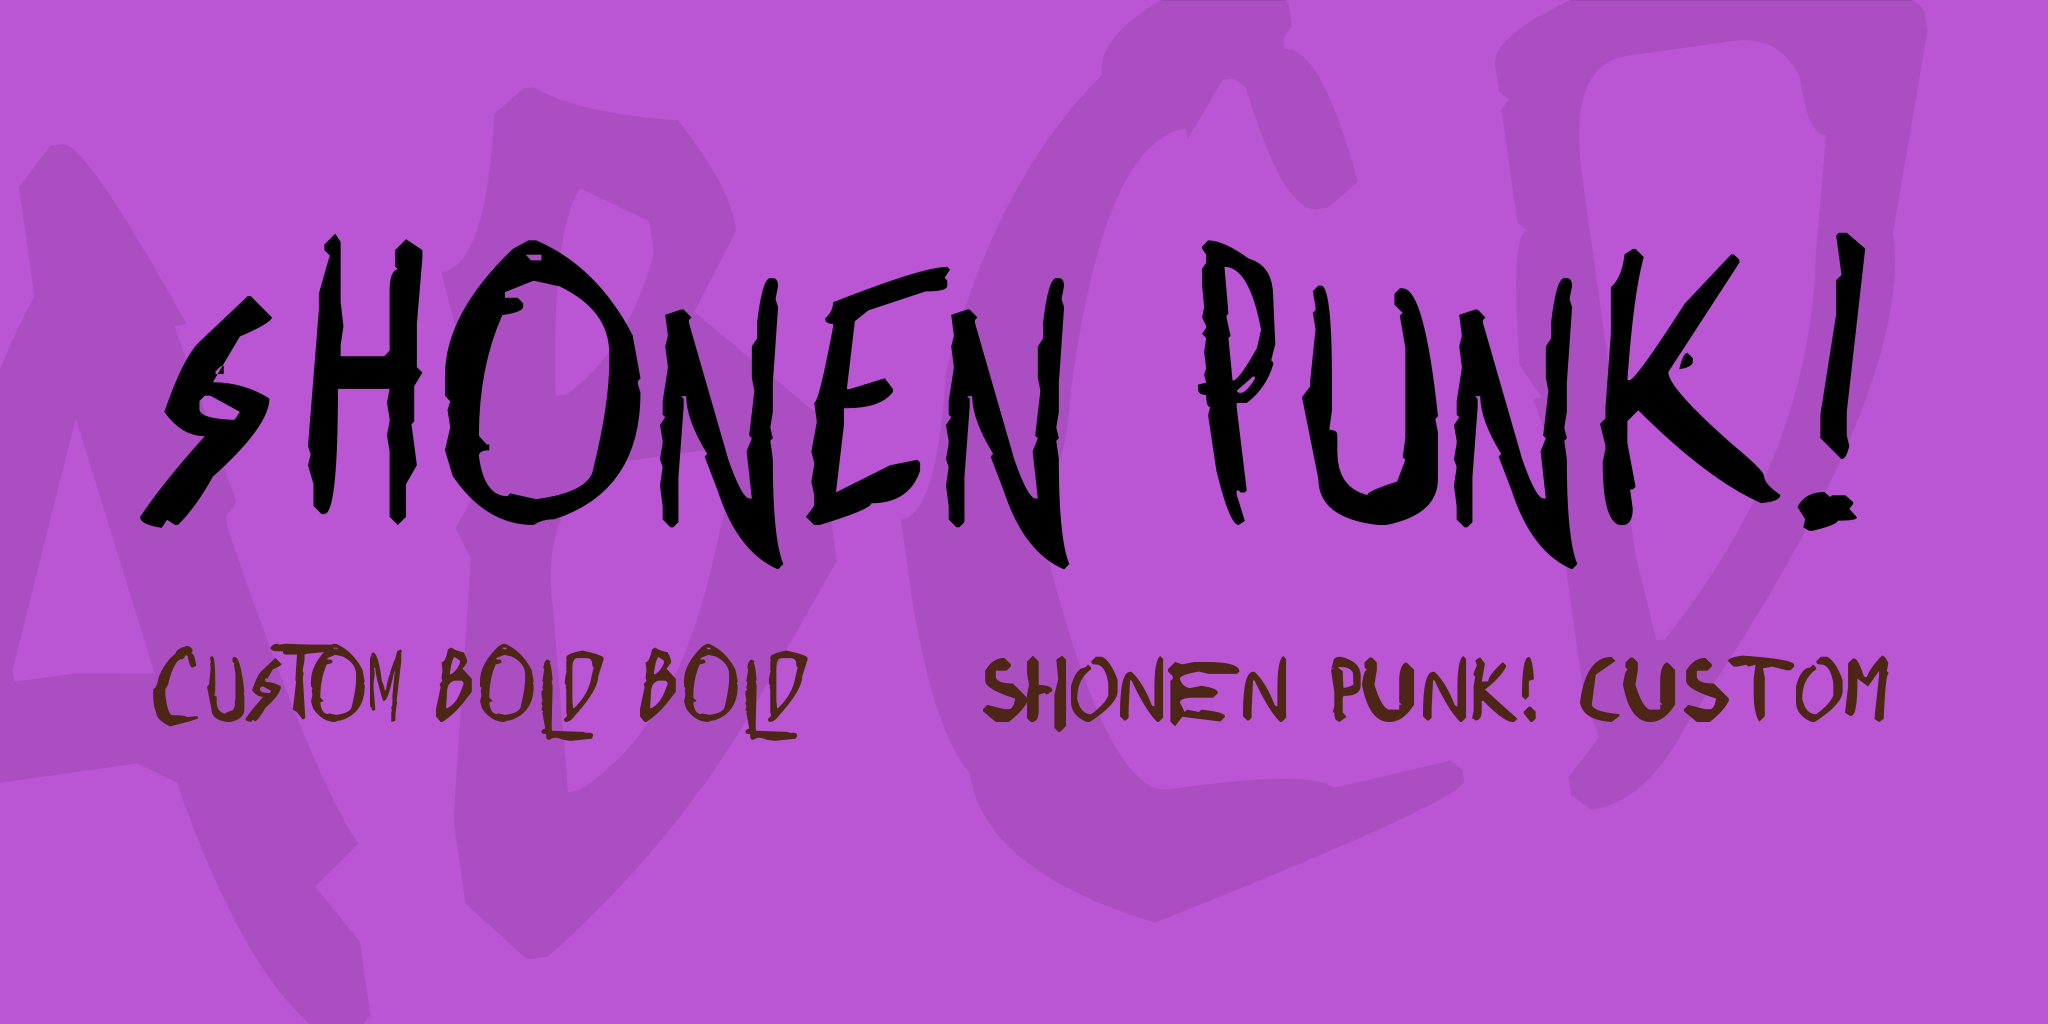 Shonen Punk